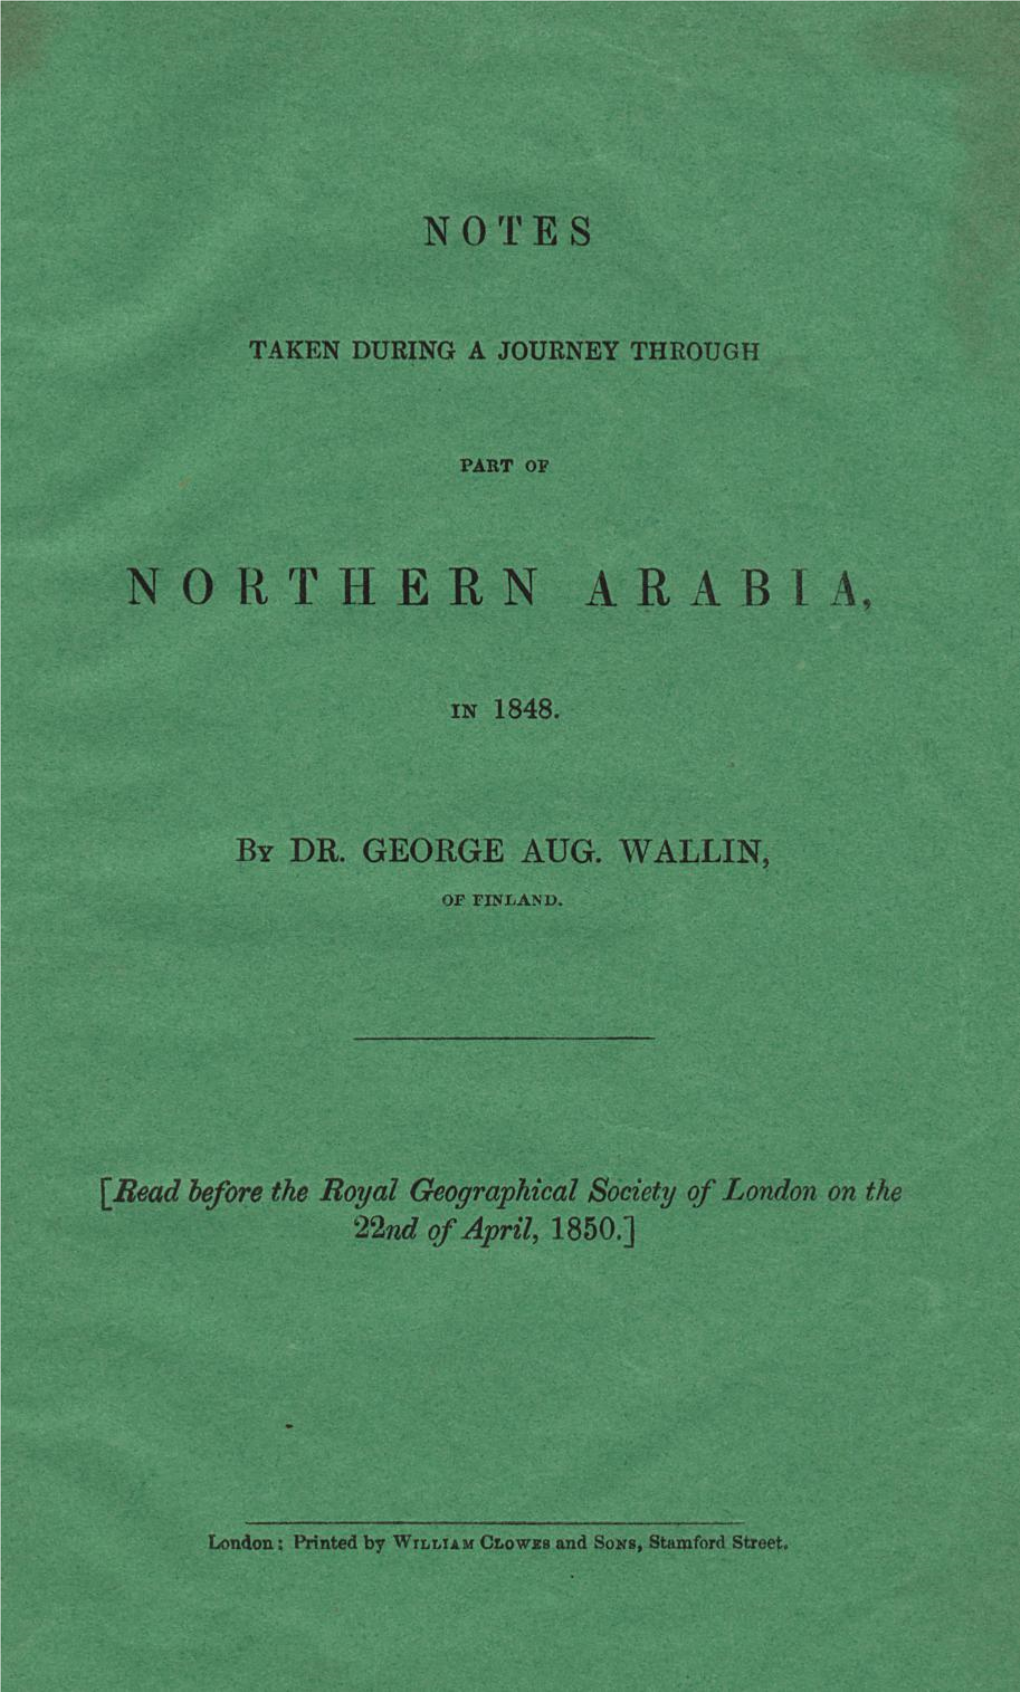 Northern Arabia